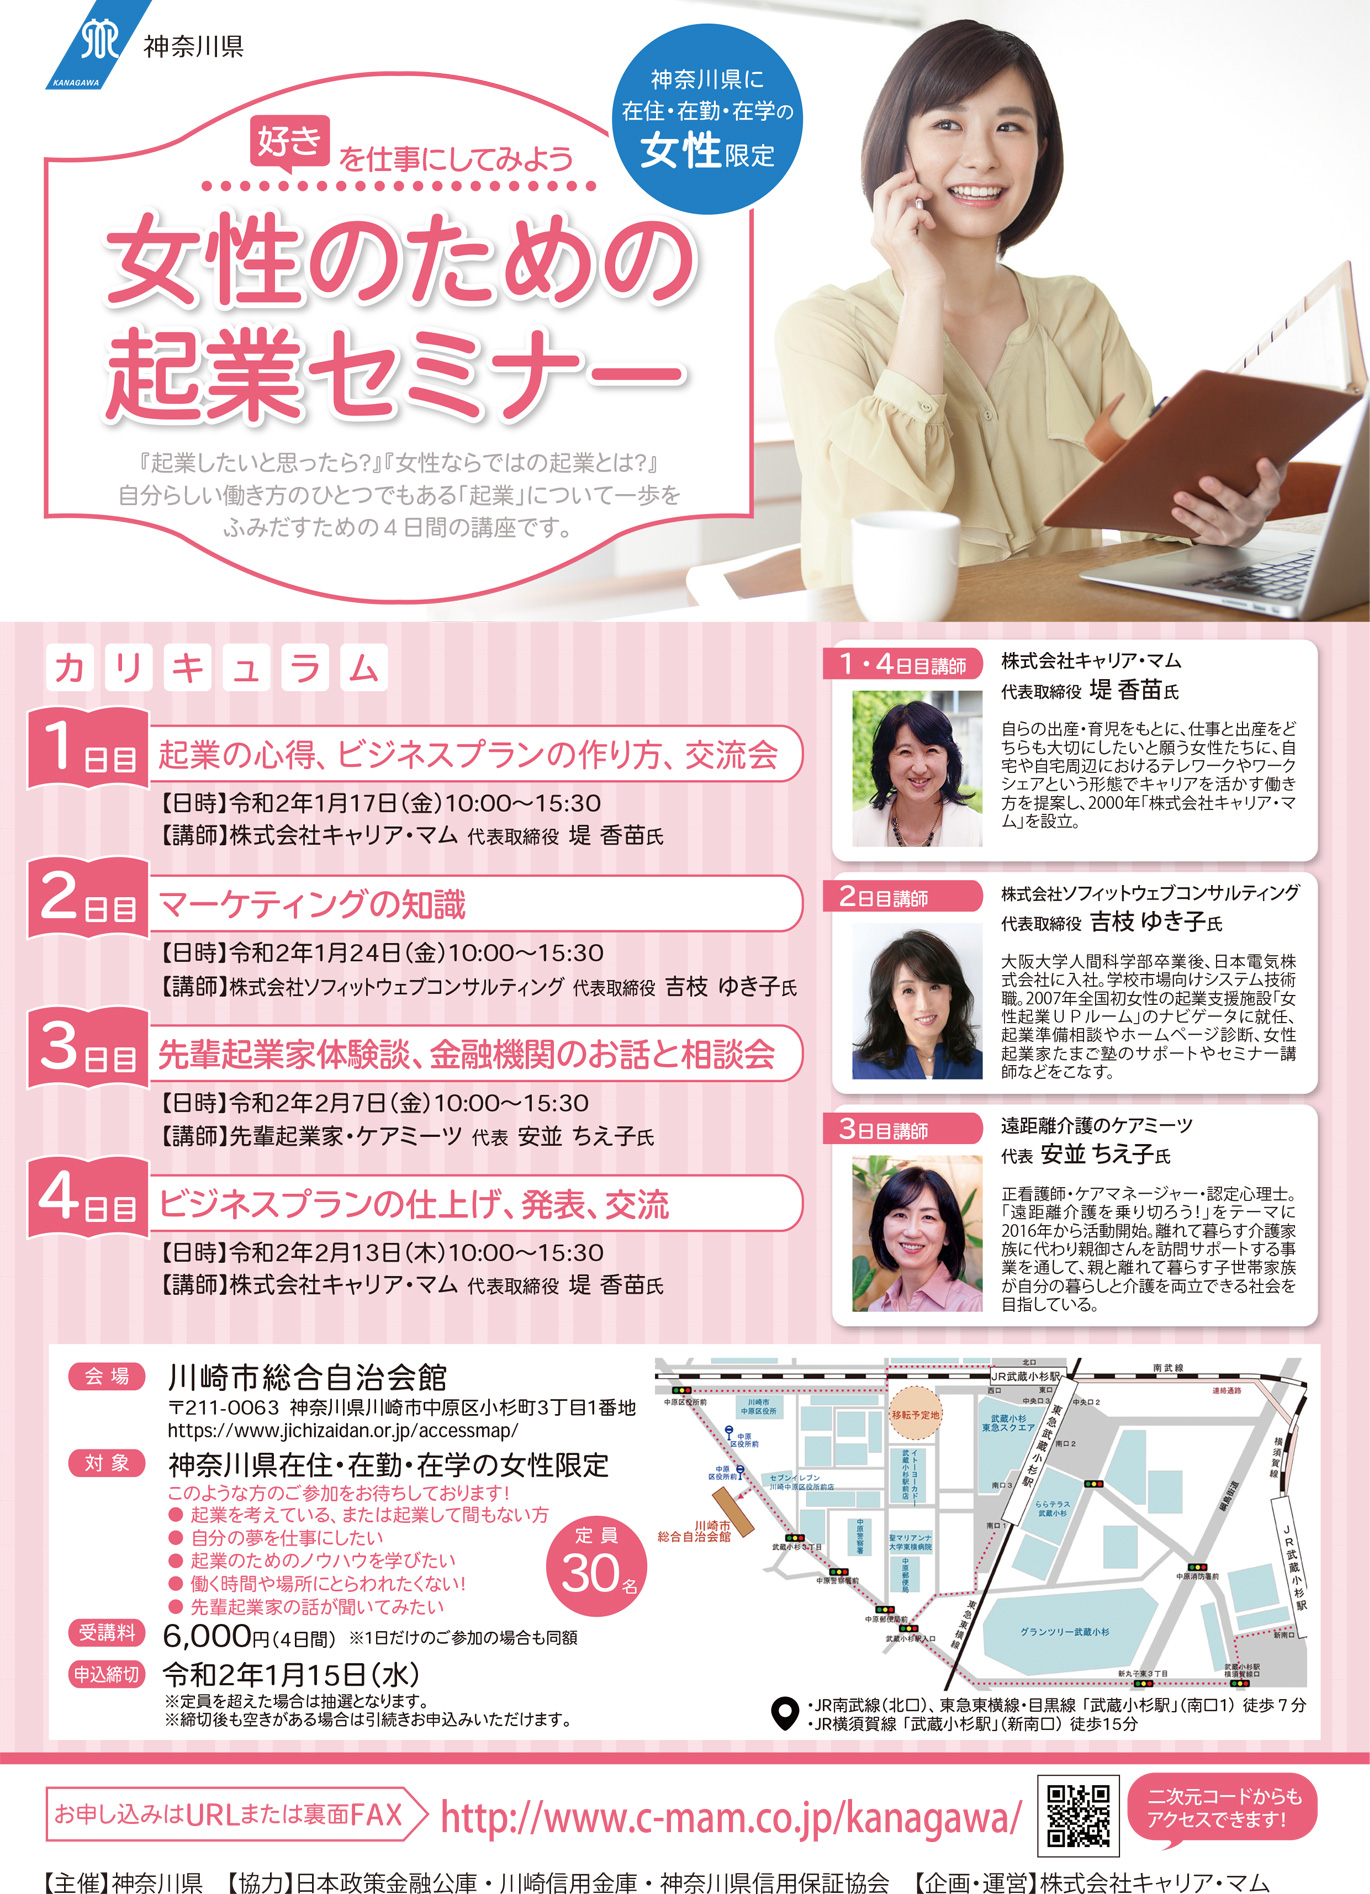 《神奈川県主催》「好き」を仕事にしてみよう 女性のための起業セミナー